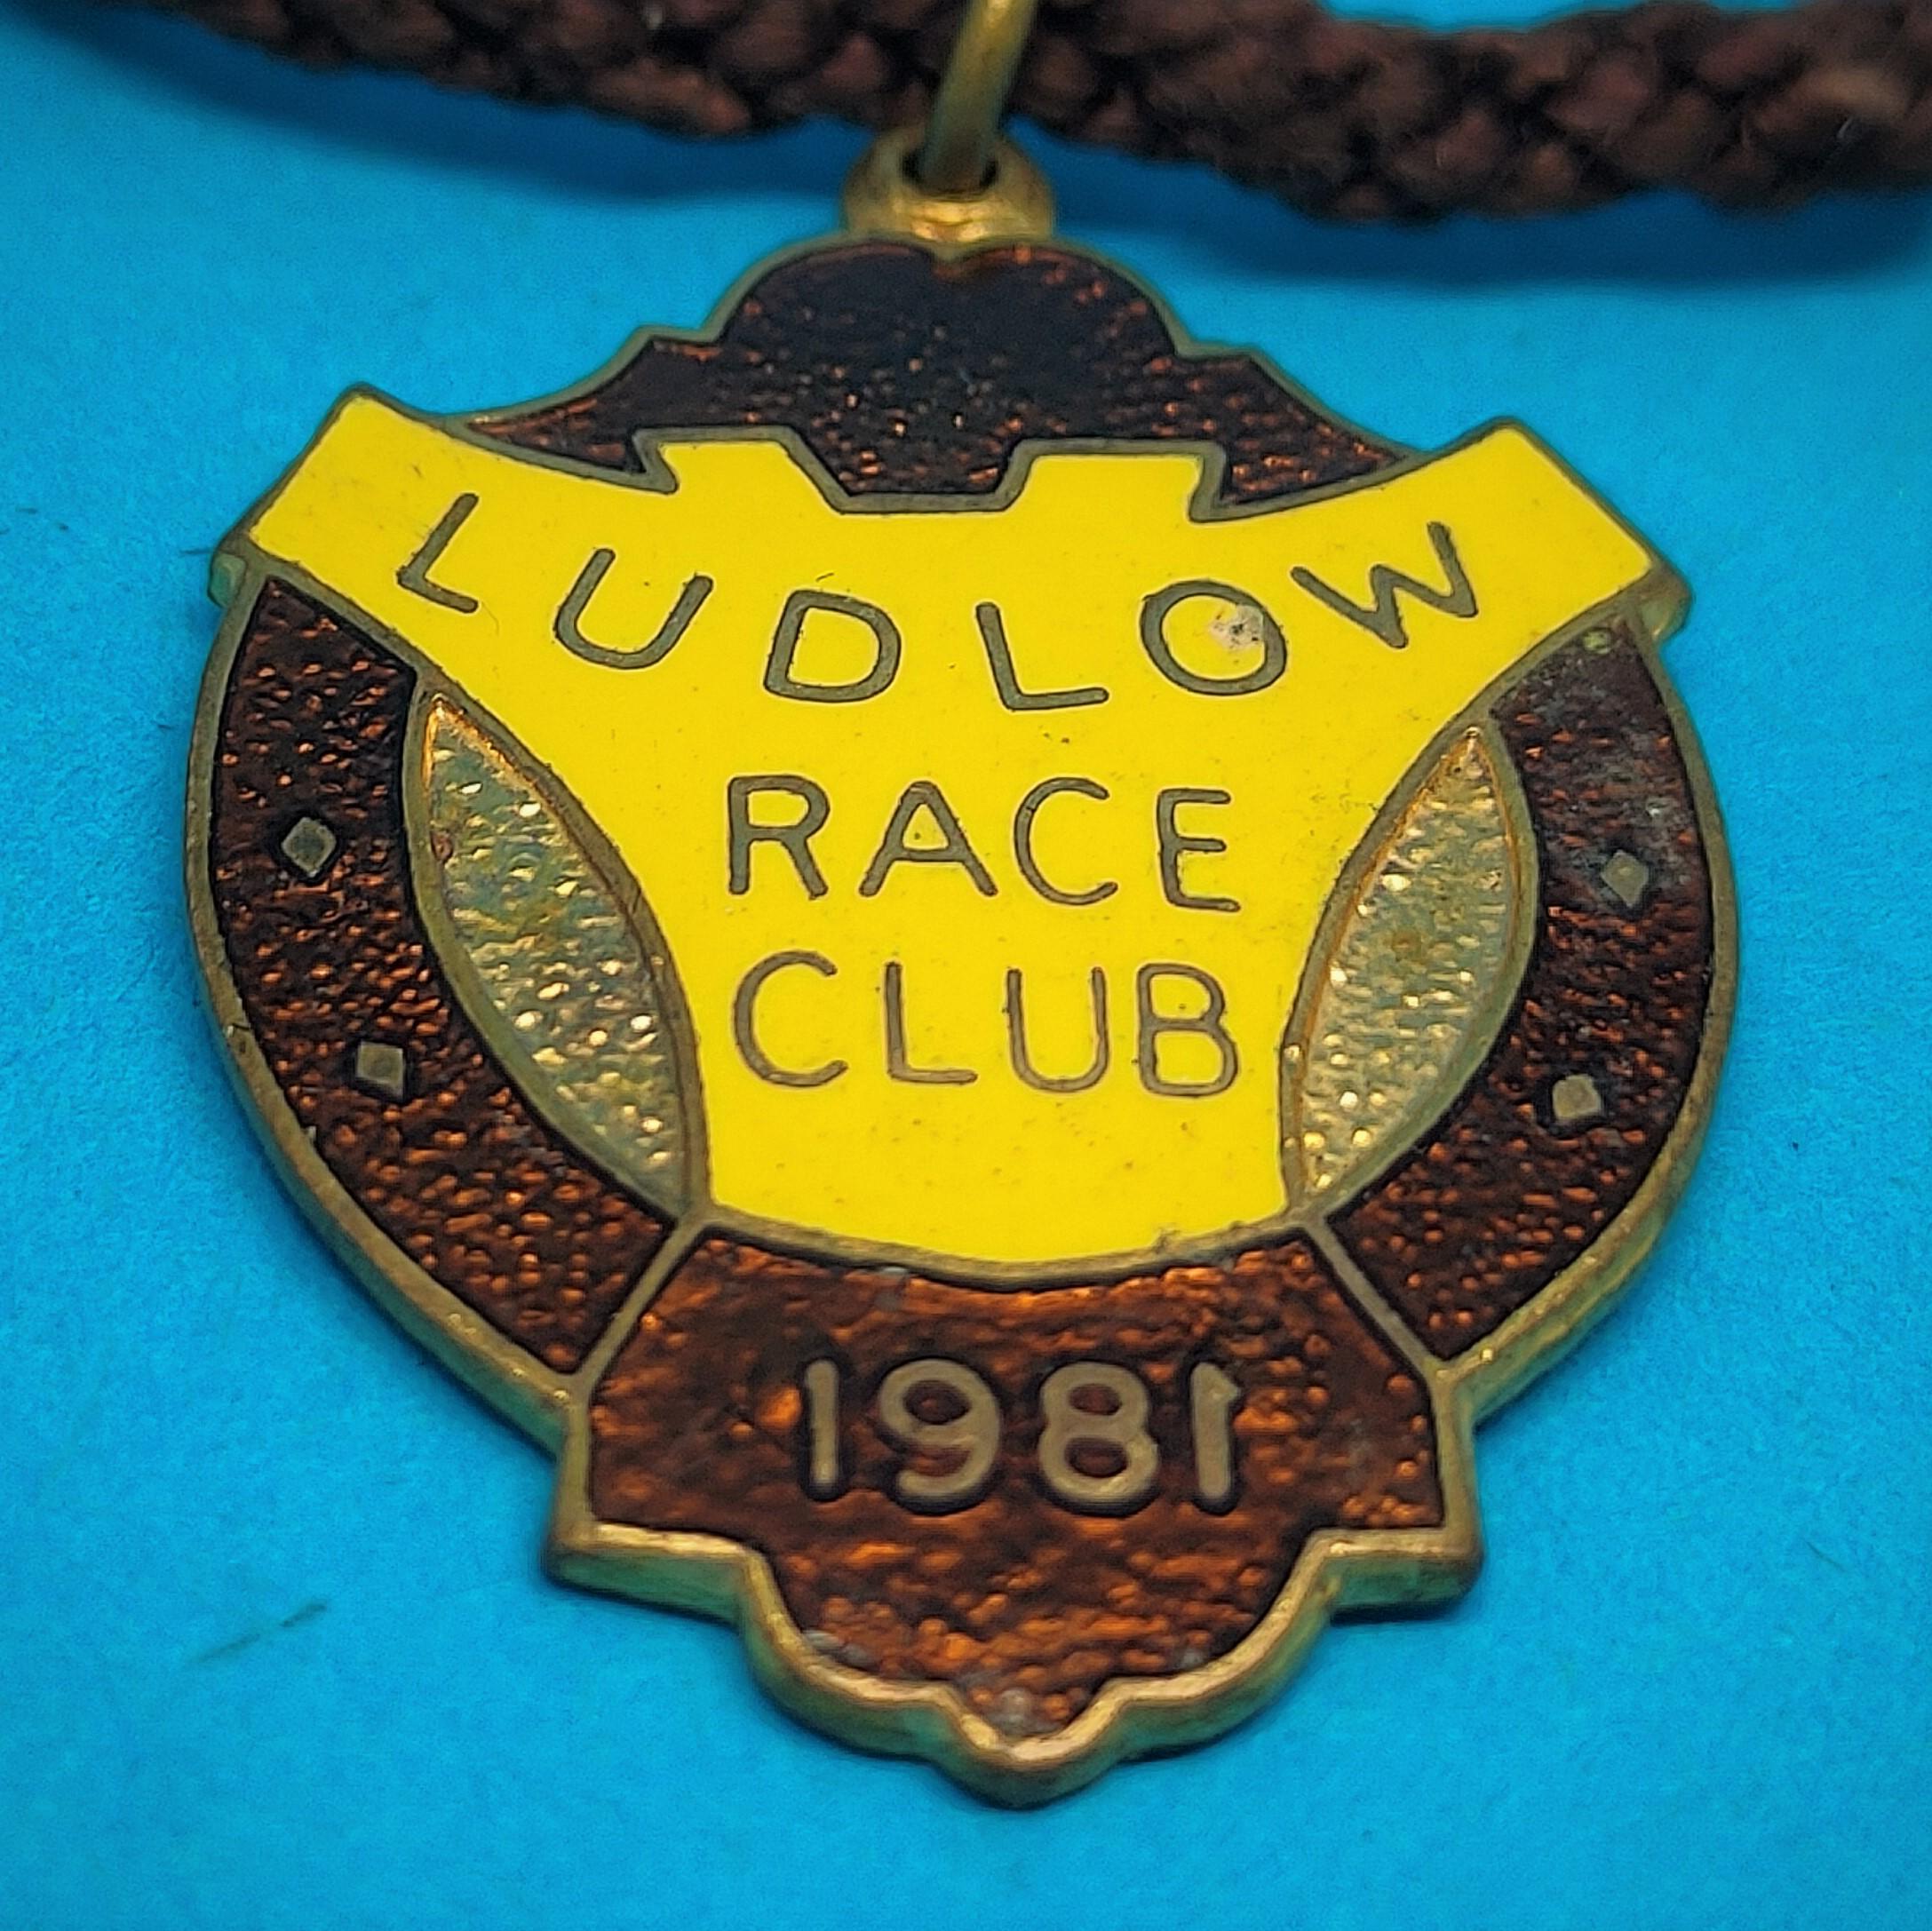 Ludlow 1981